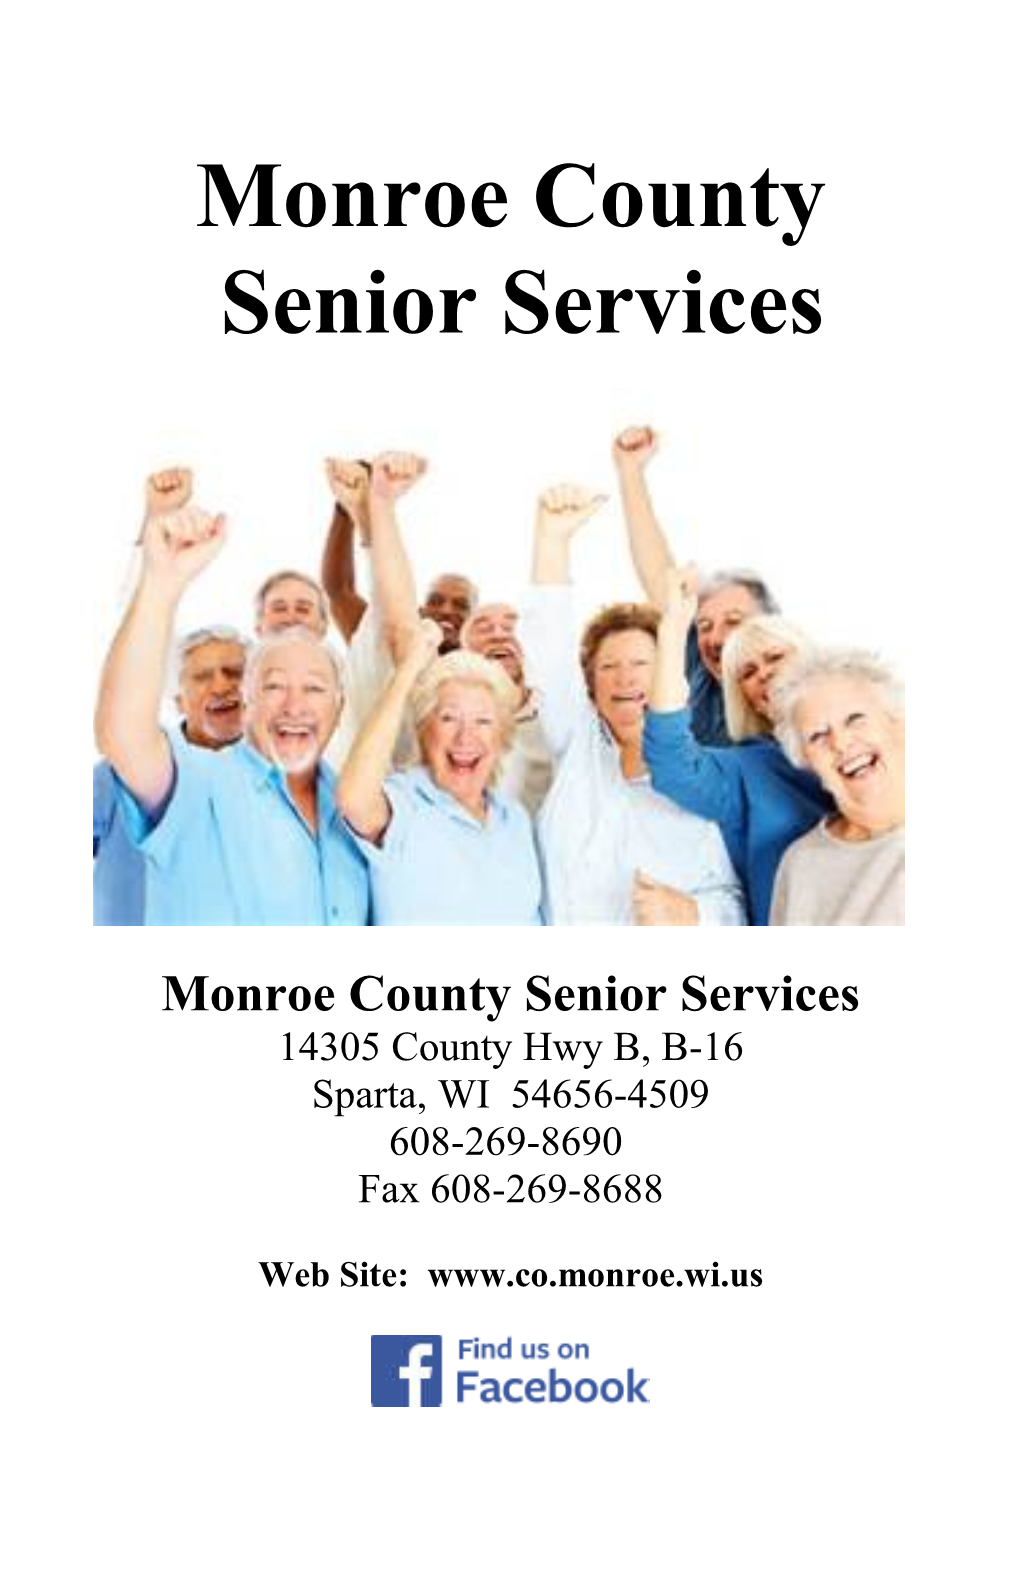 Monroe County Senior Services